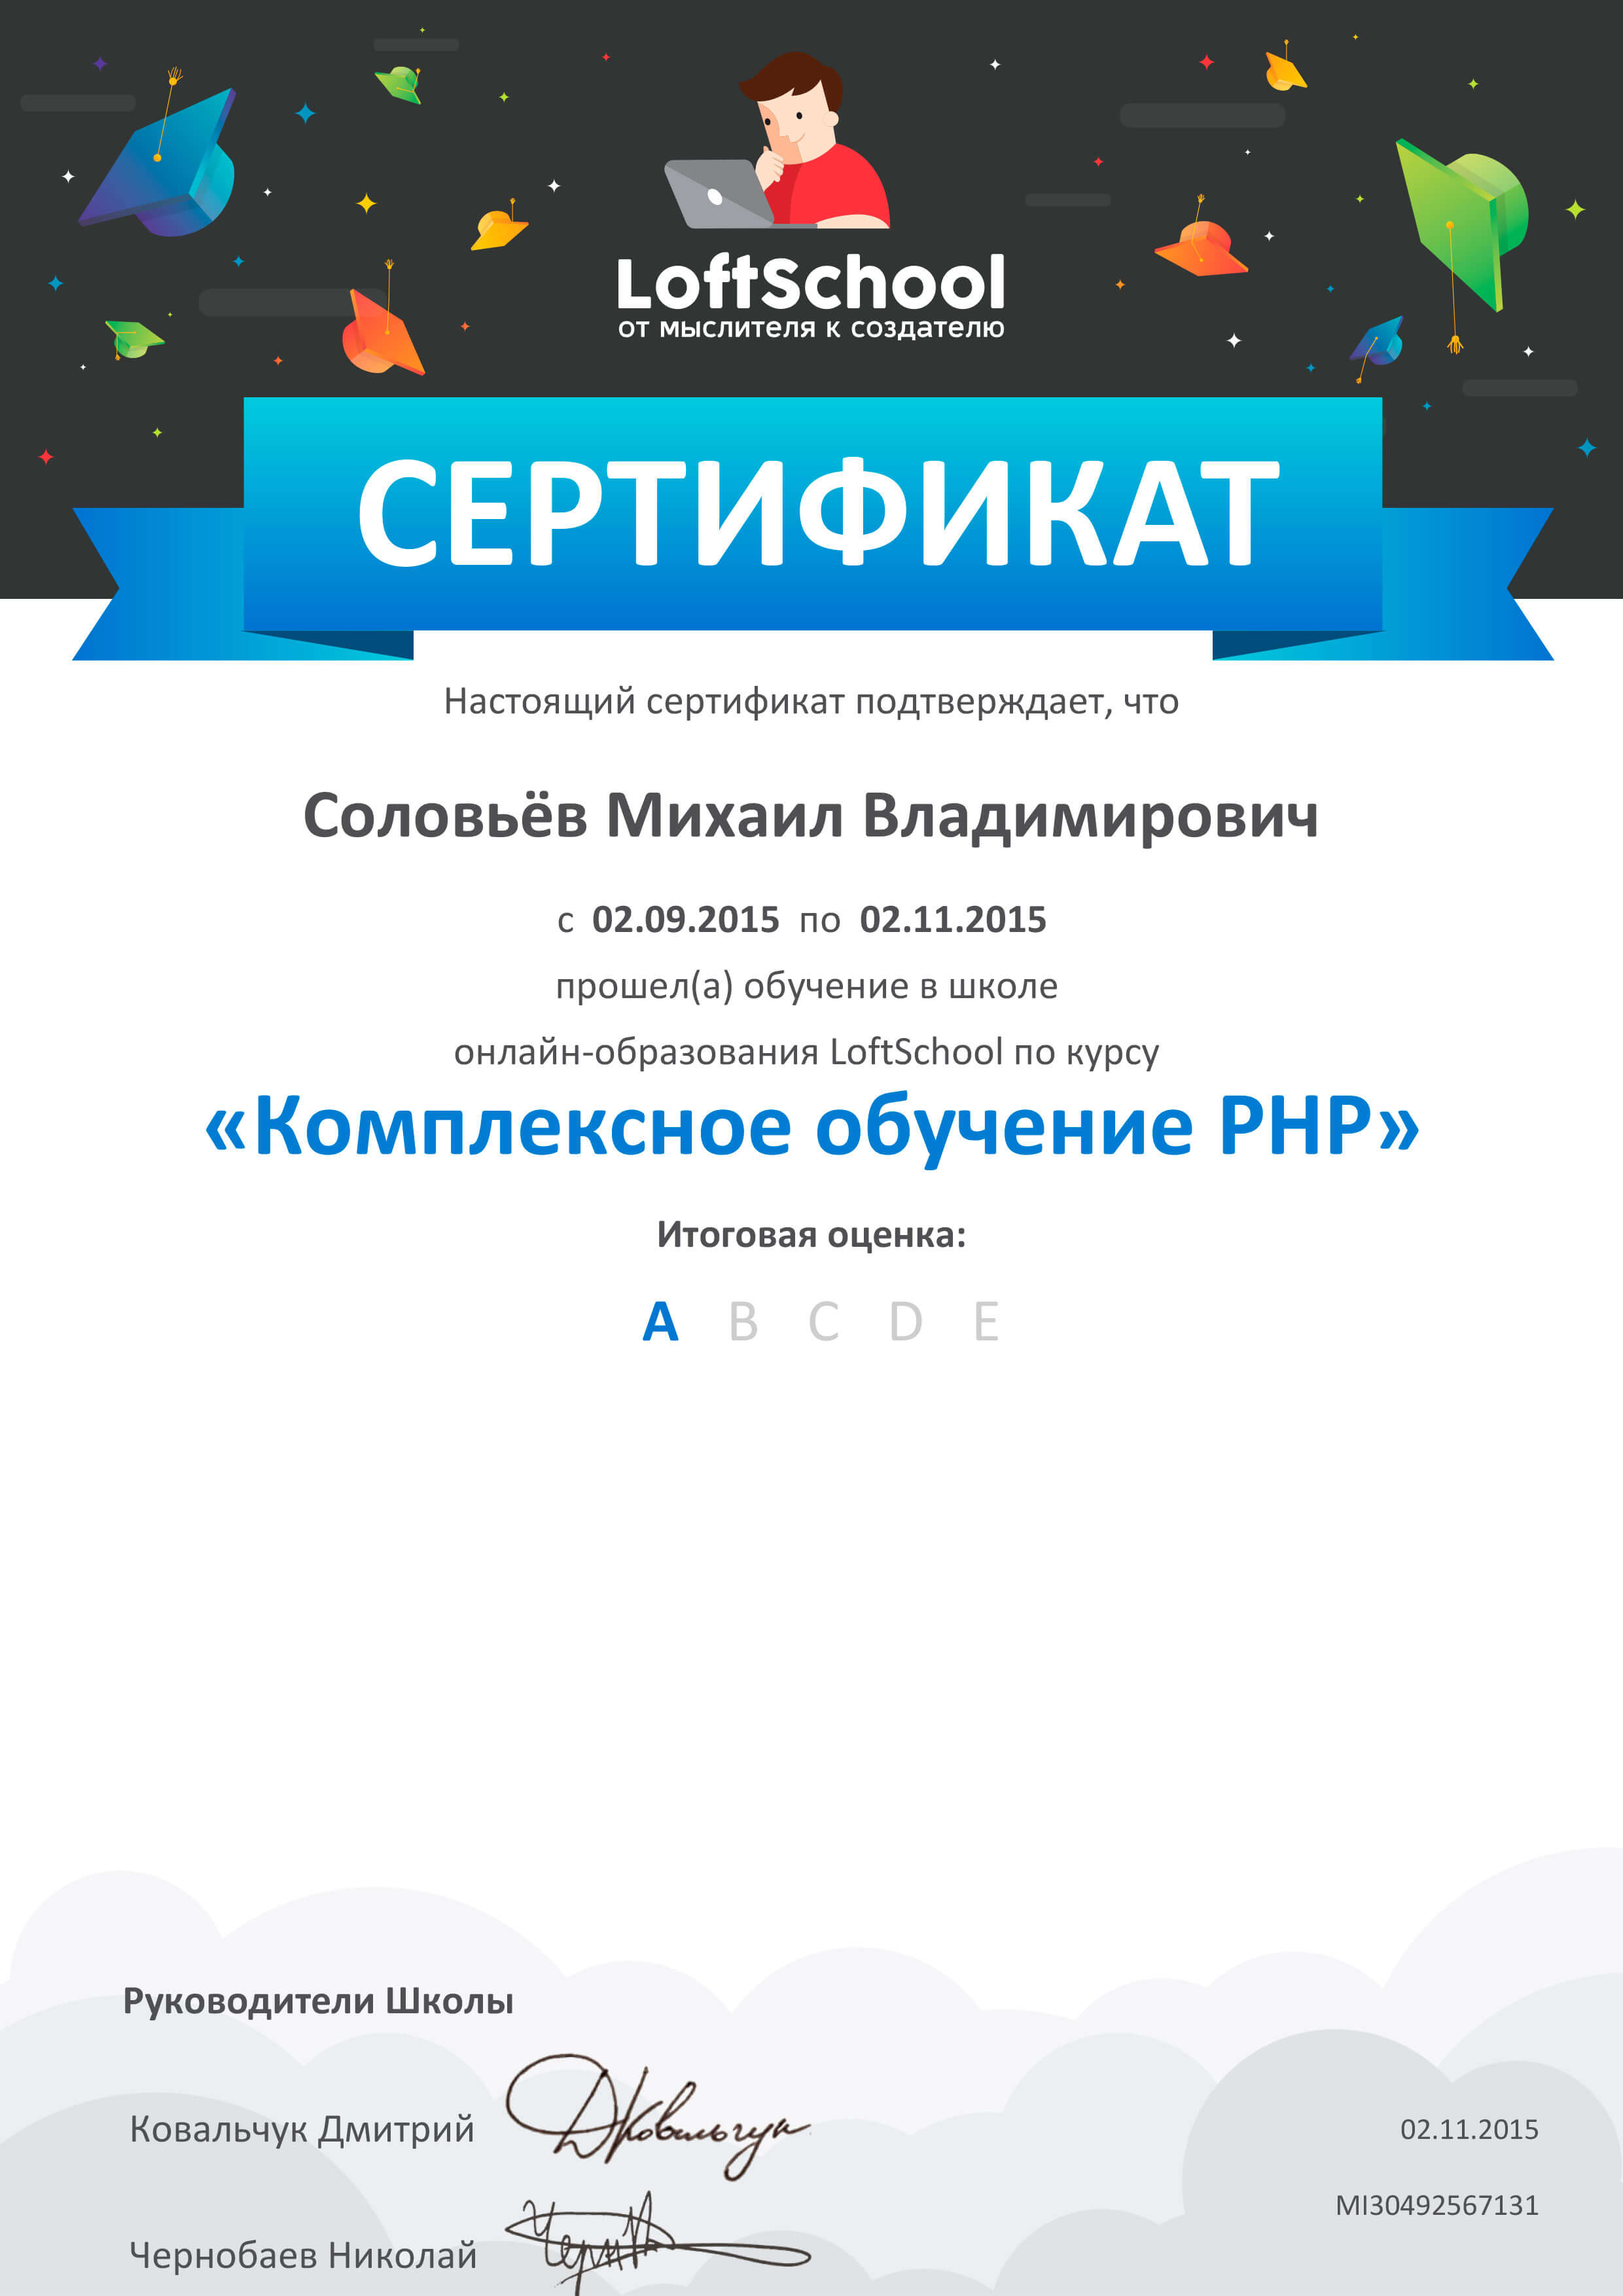 Сертификат “Обучение PHP”